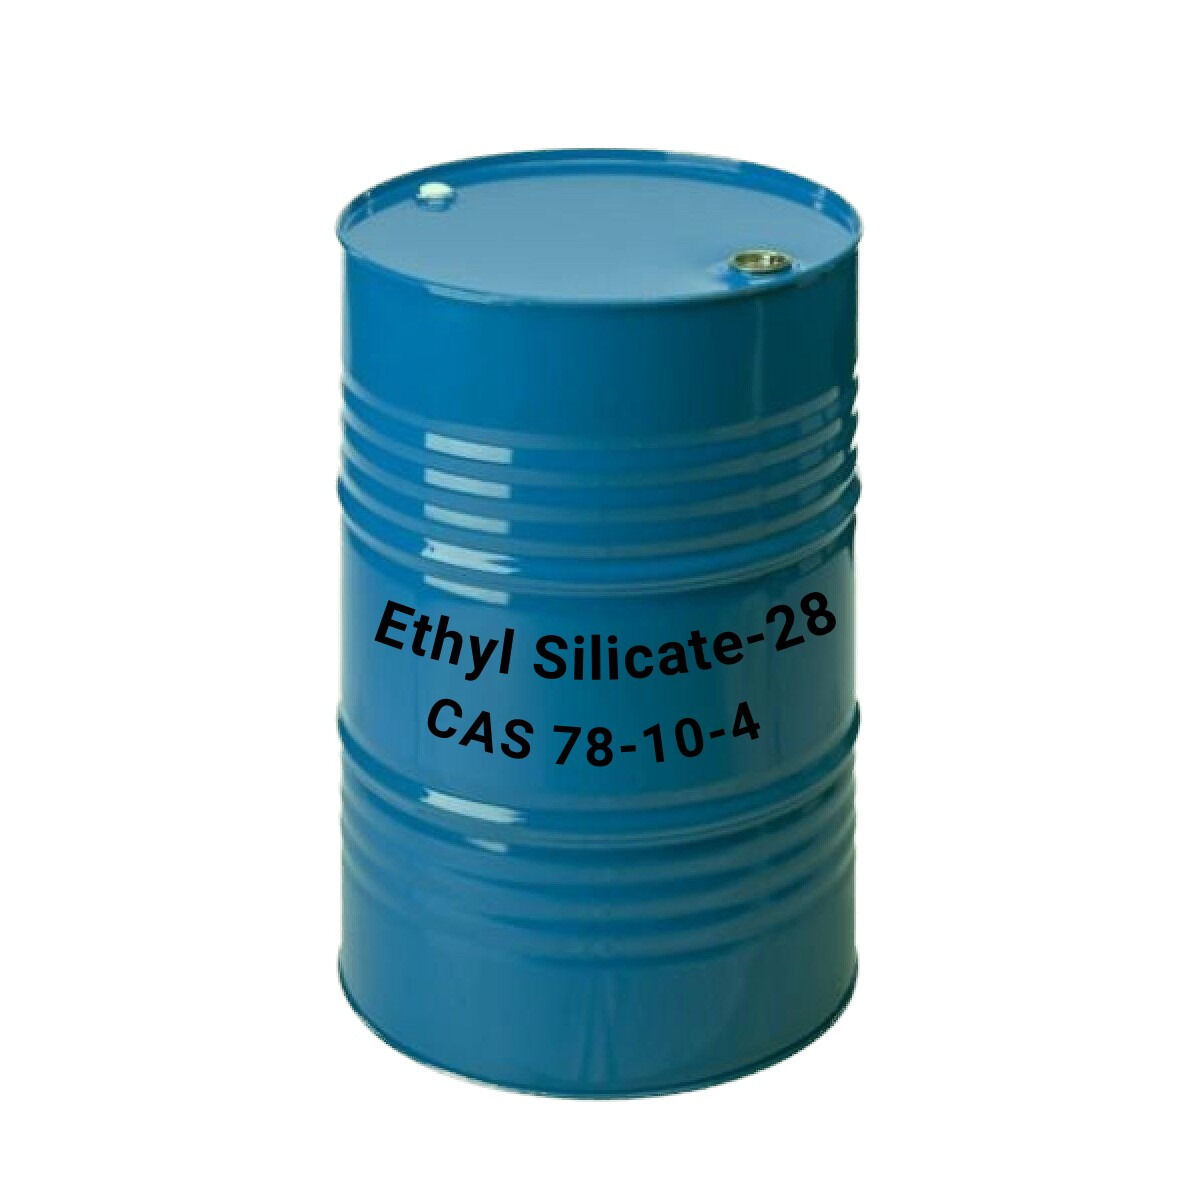 Этилсиликат ТЭОС-28, Ethyl silicate 28, CAS 78-10-4 Китай